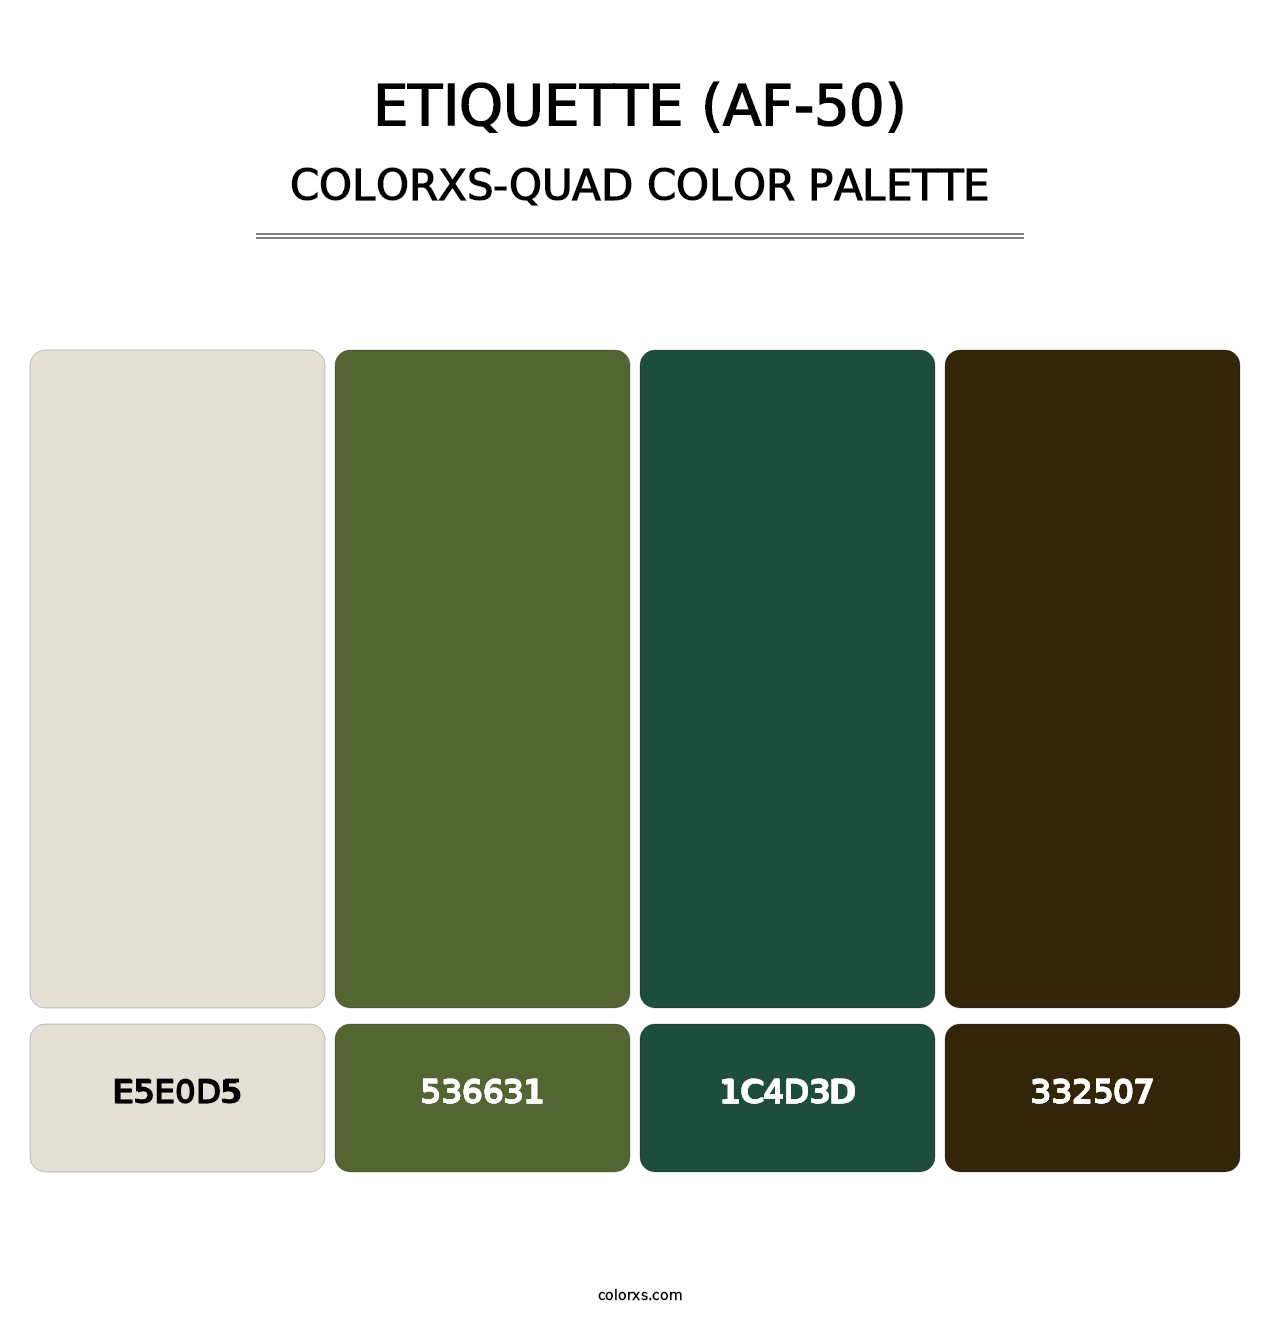 Etiquette (AF-50) - Colorxs Quad Palette